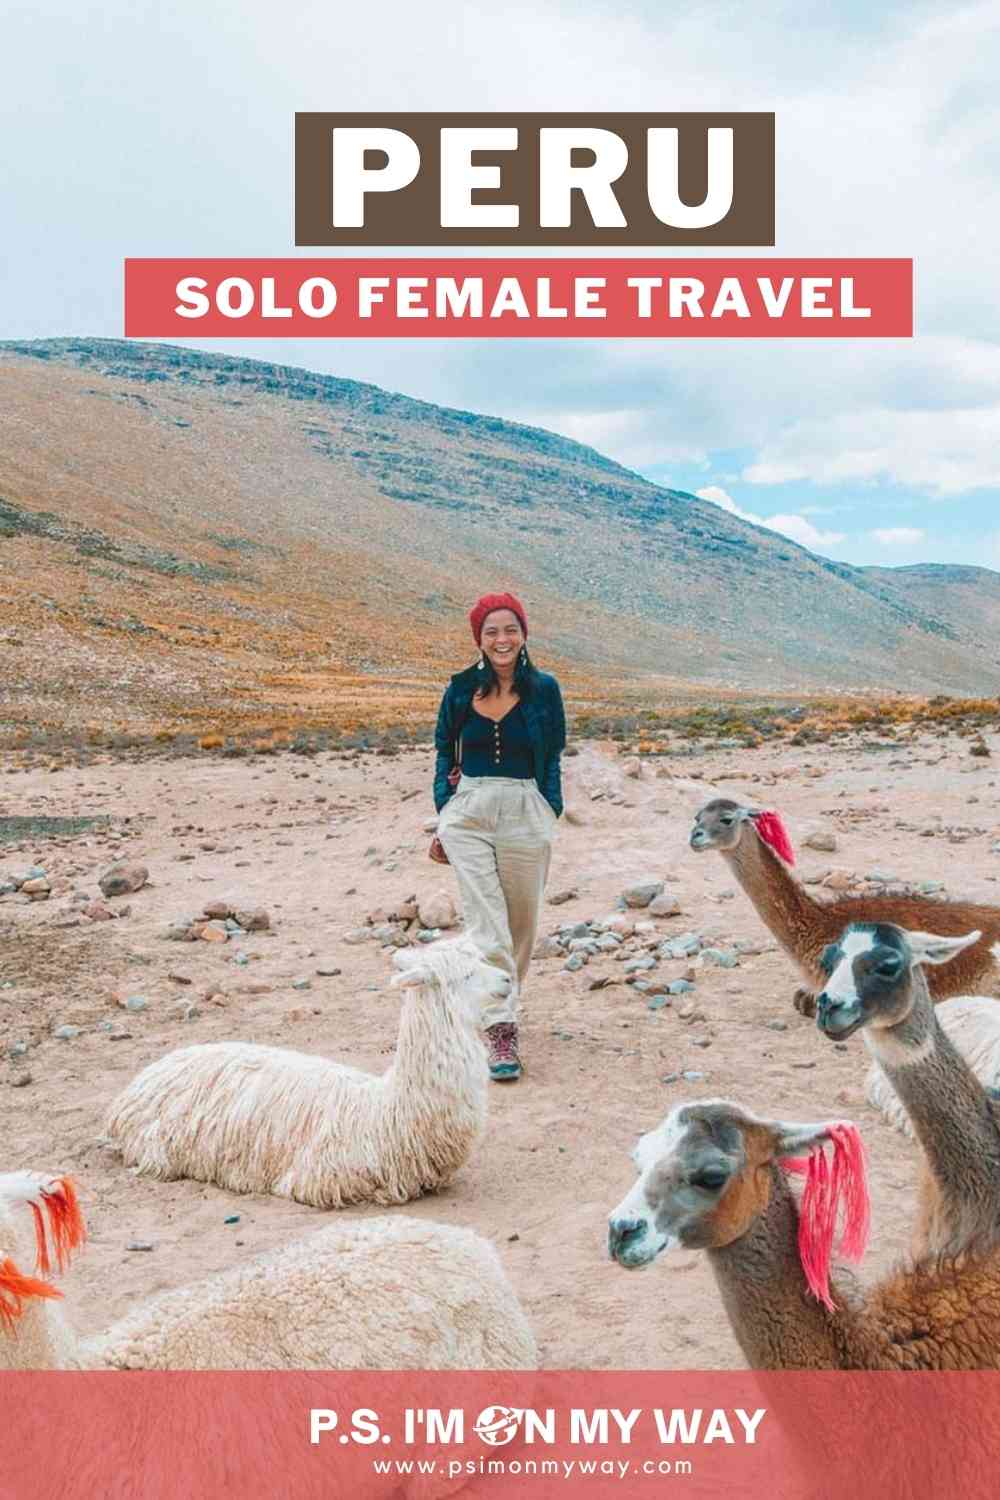 Solo female travel in Peru